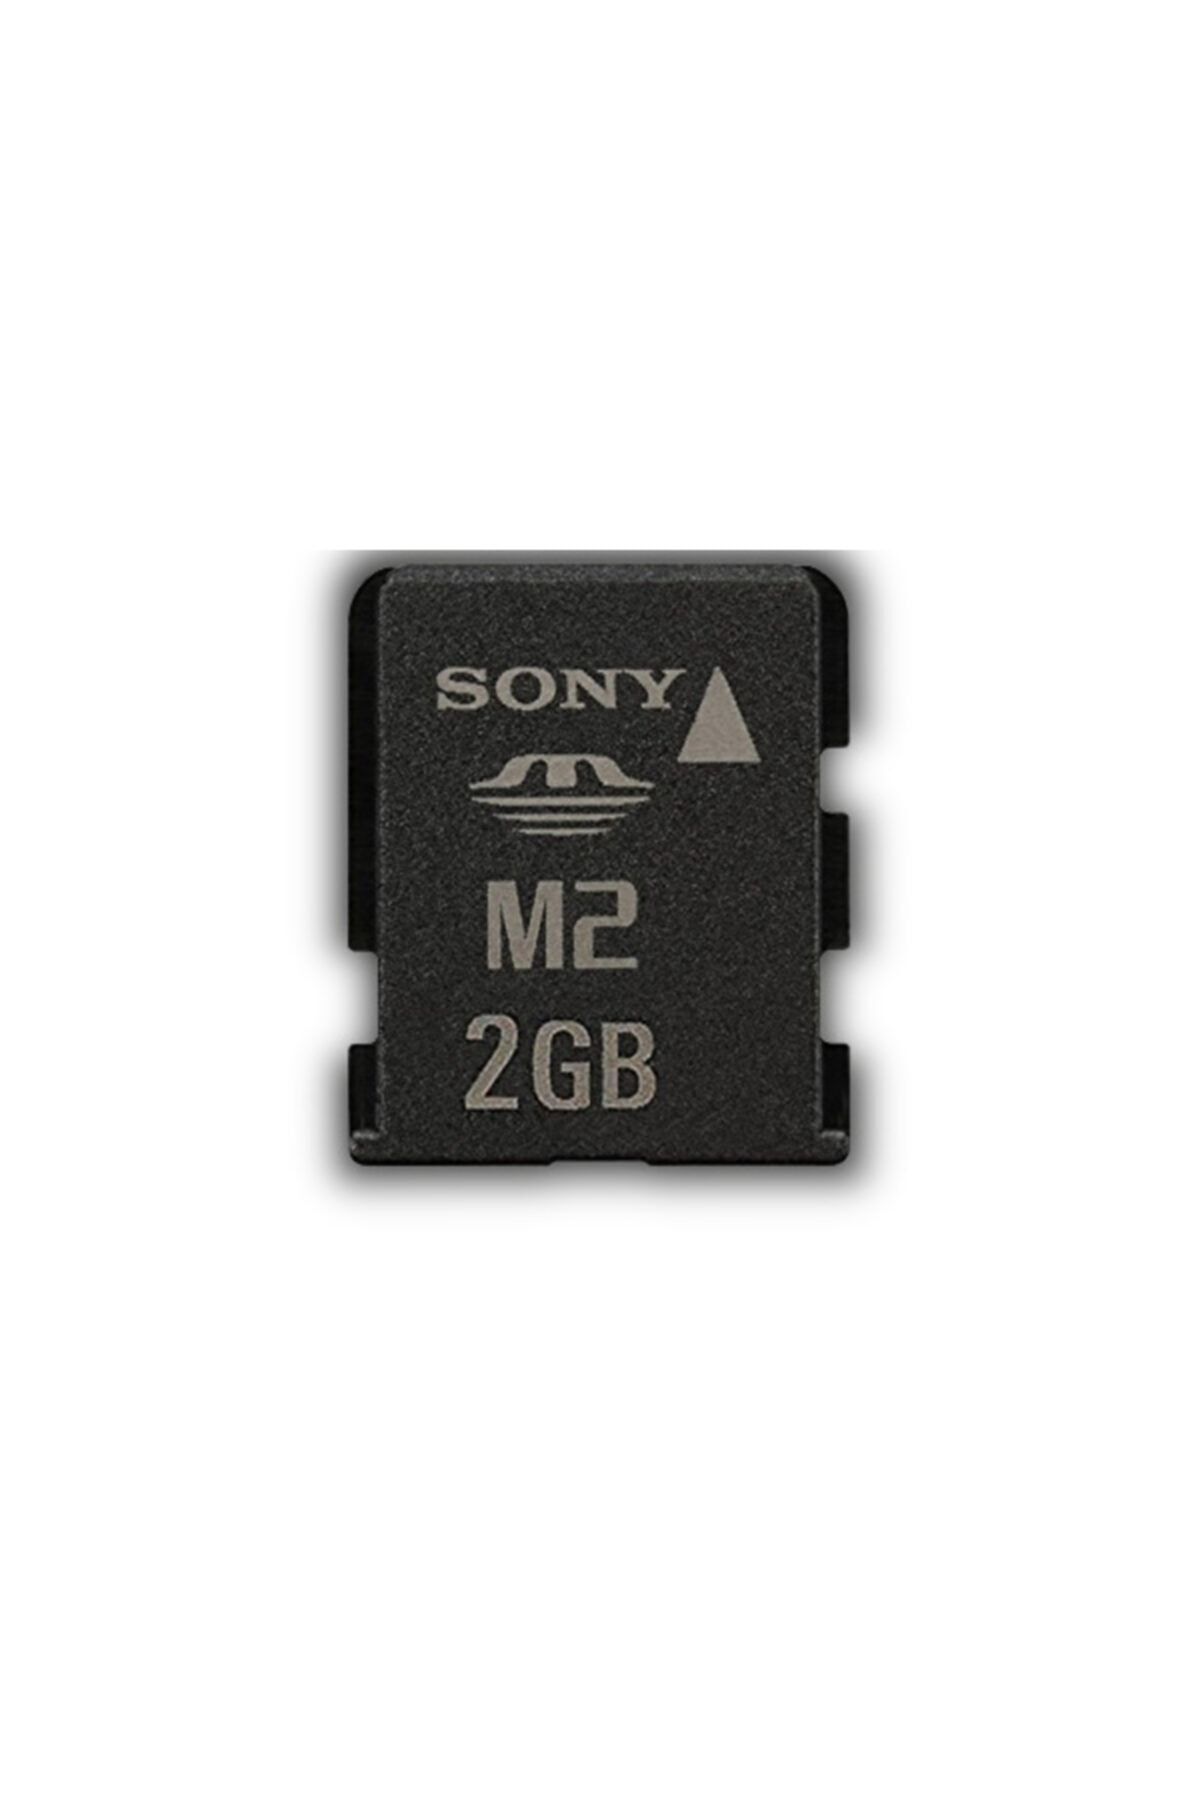 Sony M2 2gb Hafıza Kartı Memory Stick Psp Go Ve Telefonlar Için Kullanılır